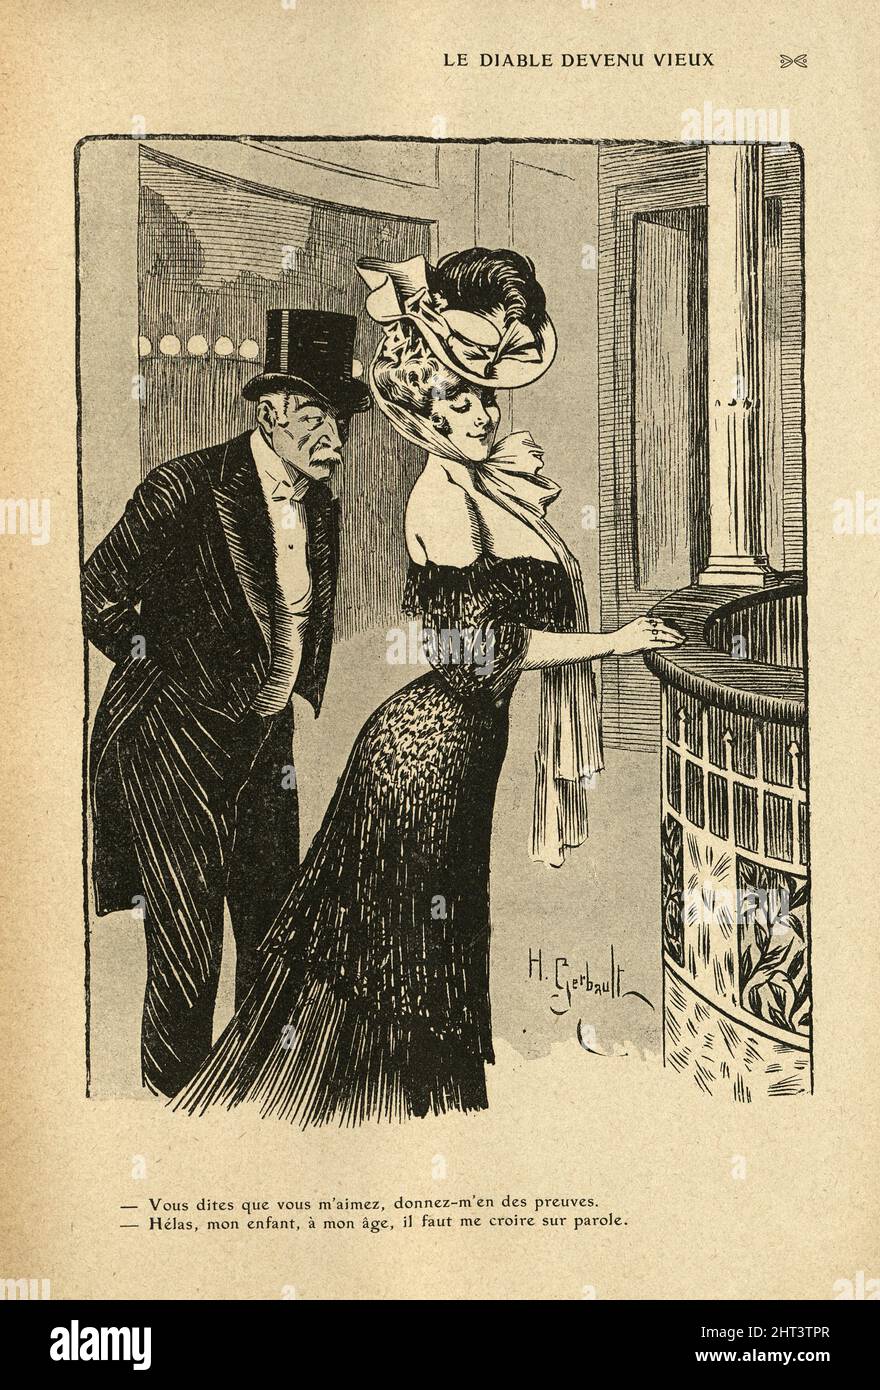 Dessin animé français vintage par Henri Gerbault, vieil homme flirtant avec la belle femme, 1900s. Le diable est devenu vieux… Vous dites que vous m'aimez, donnez-moi la preuve de cela. Banque D'Images